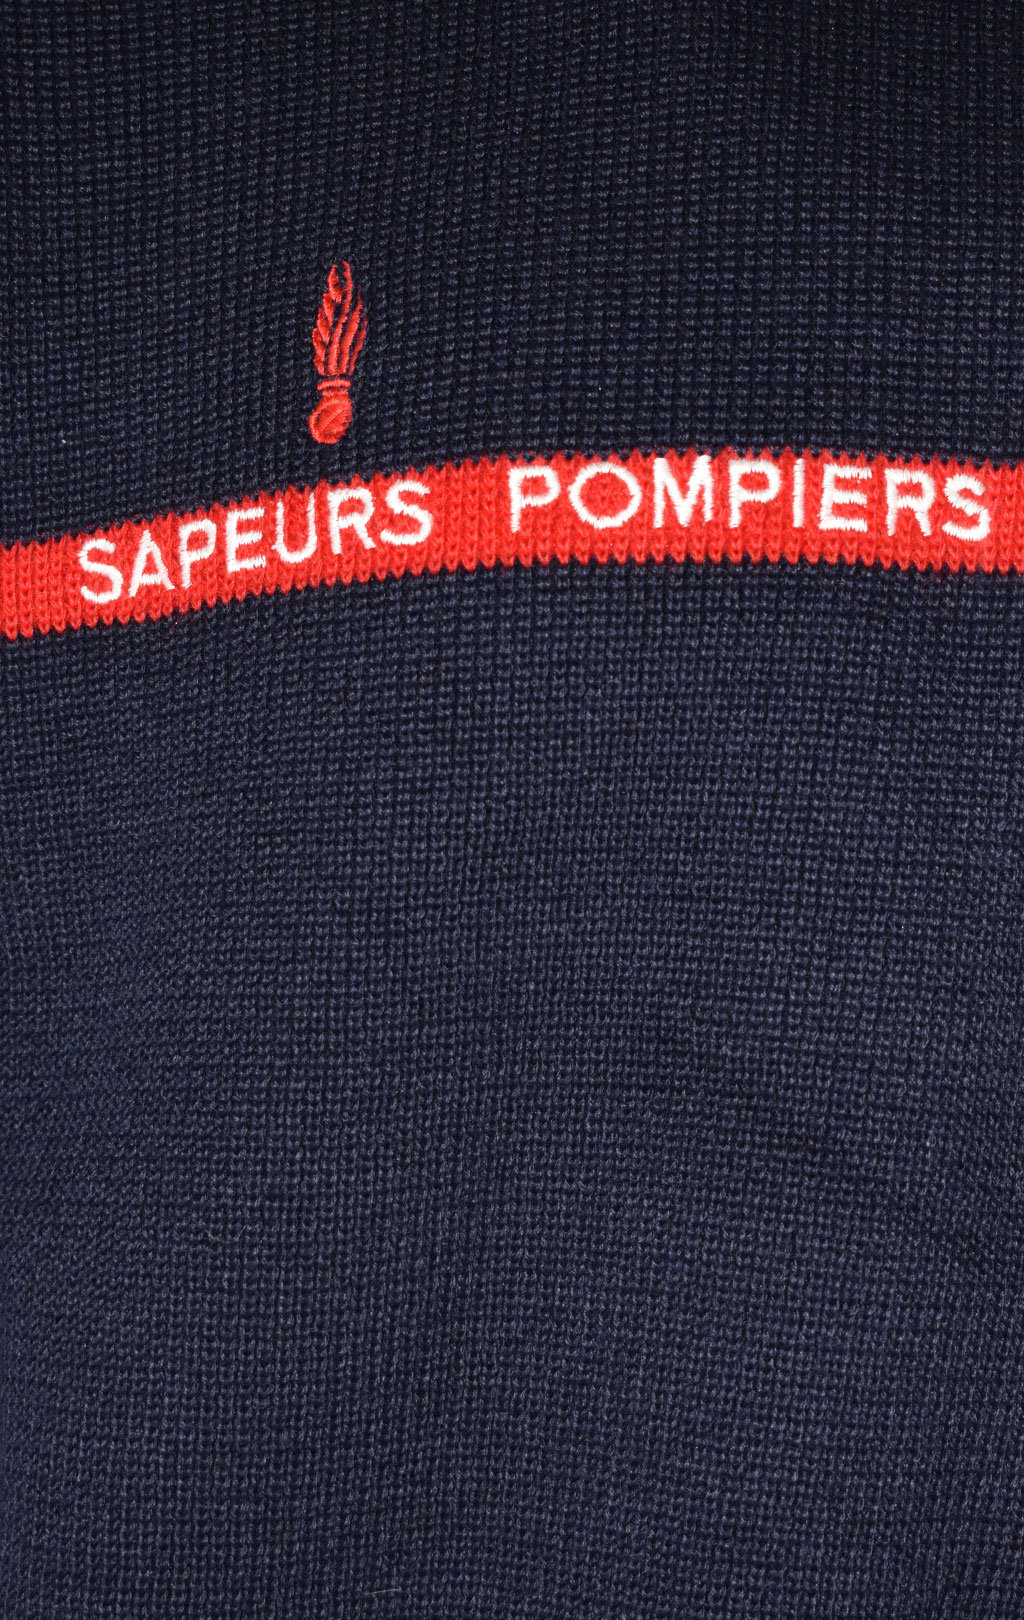 Свитер форменный Sapeurs Pompiers шерсть/акрил navy Франция